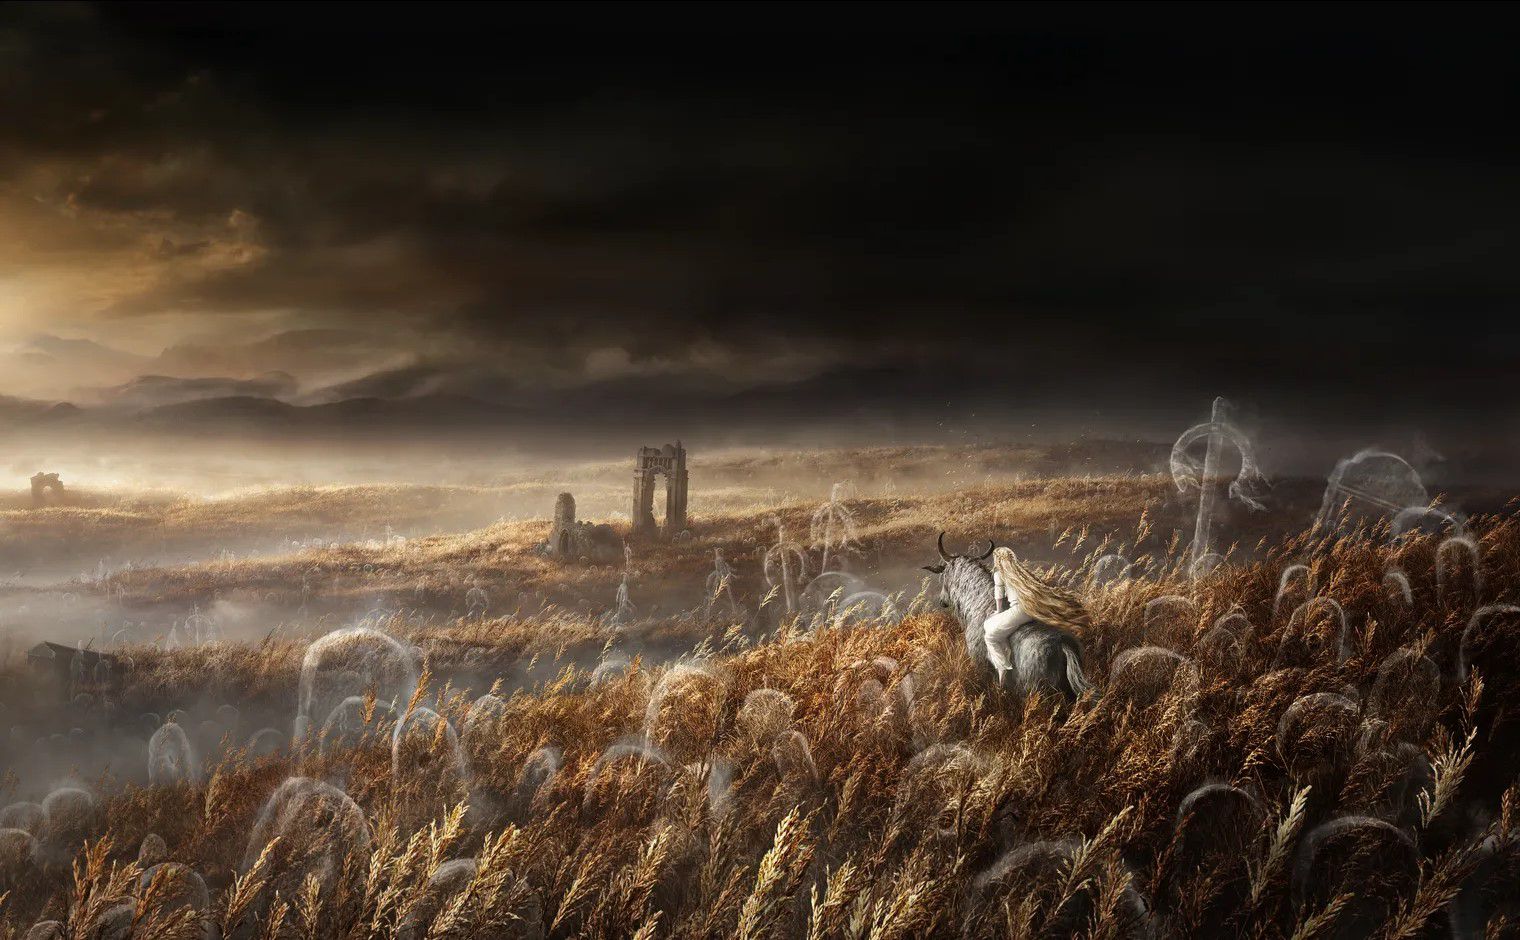 하얀 머리카락을 가진 사람이 뿔난 짐승을 타고 안개와 유령같은 풍경을 향해 가고 있는; 죽어가는 에르트리가 안개로 둘러싸인 풍경 위에 서있다.